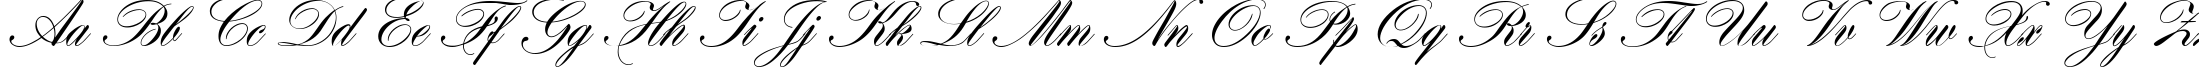 Пример написания английского алфавита шрифтом Hogarth script